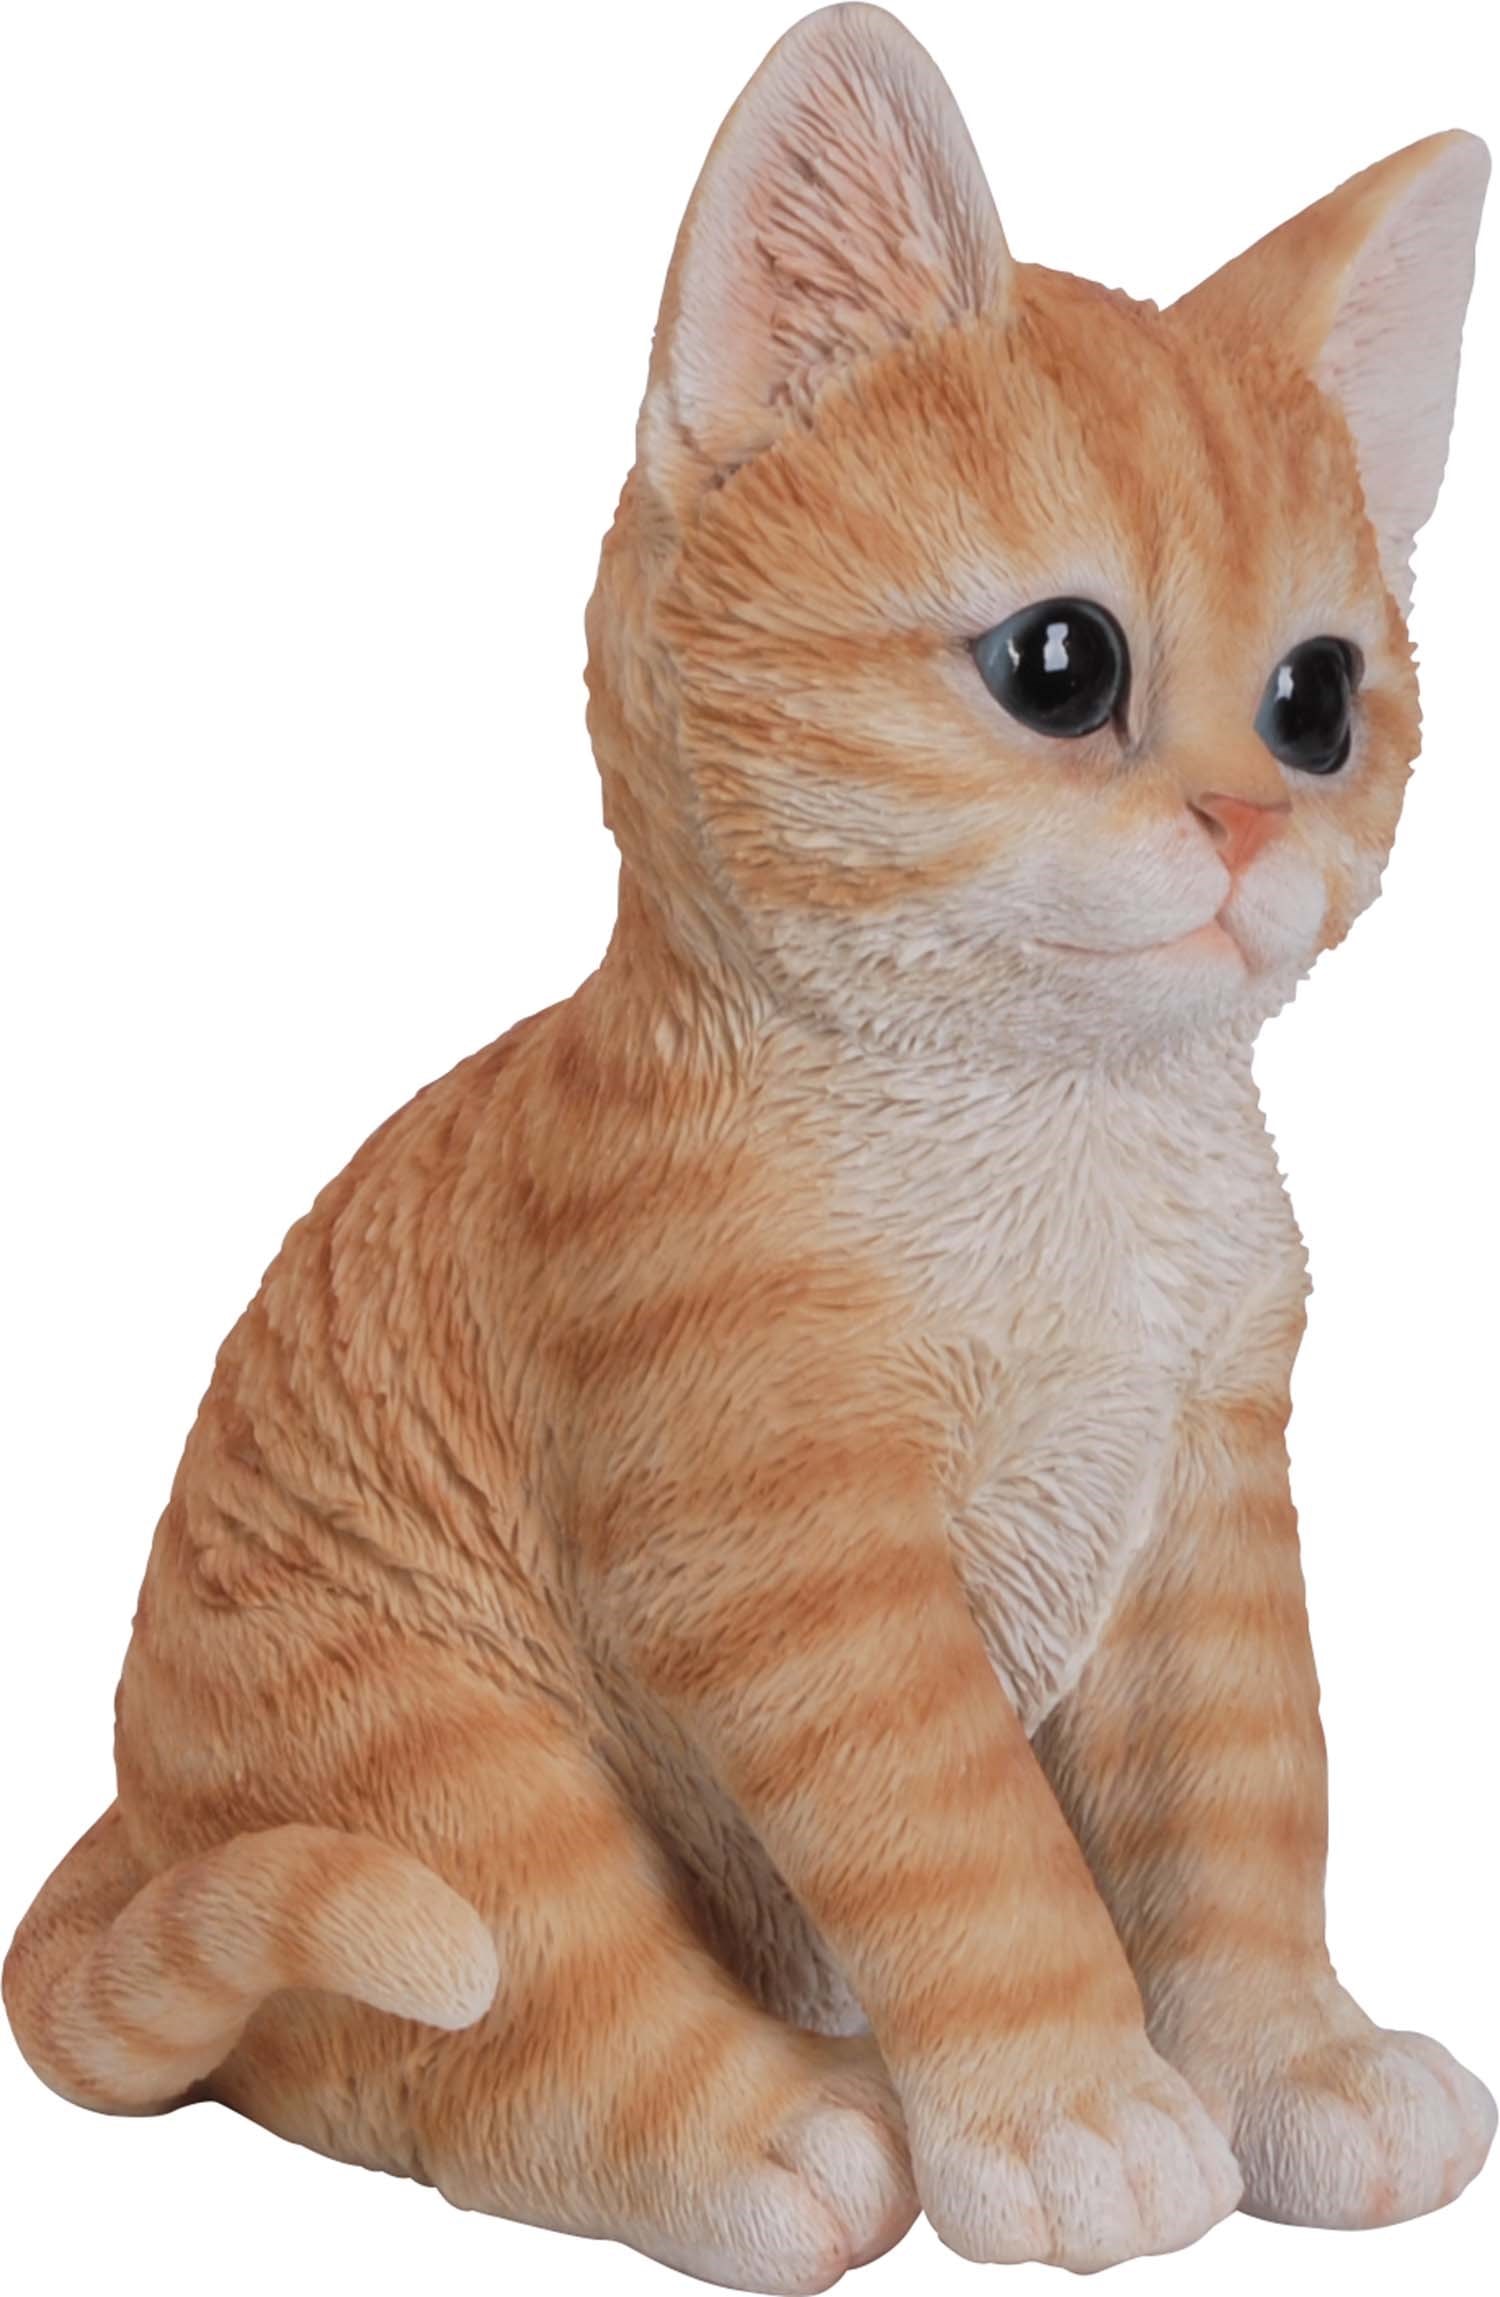 VIVID ARTS - Bébé chat roux en résine 14 cm